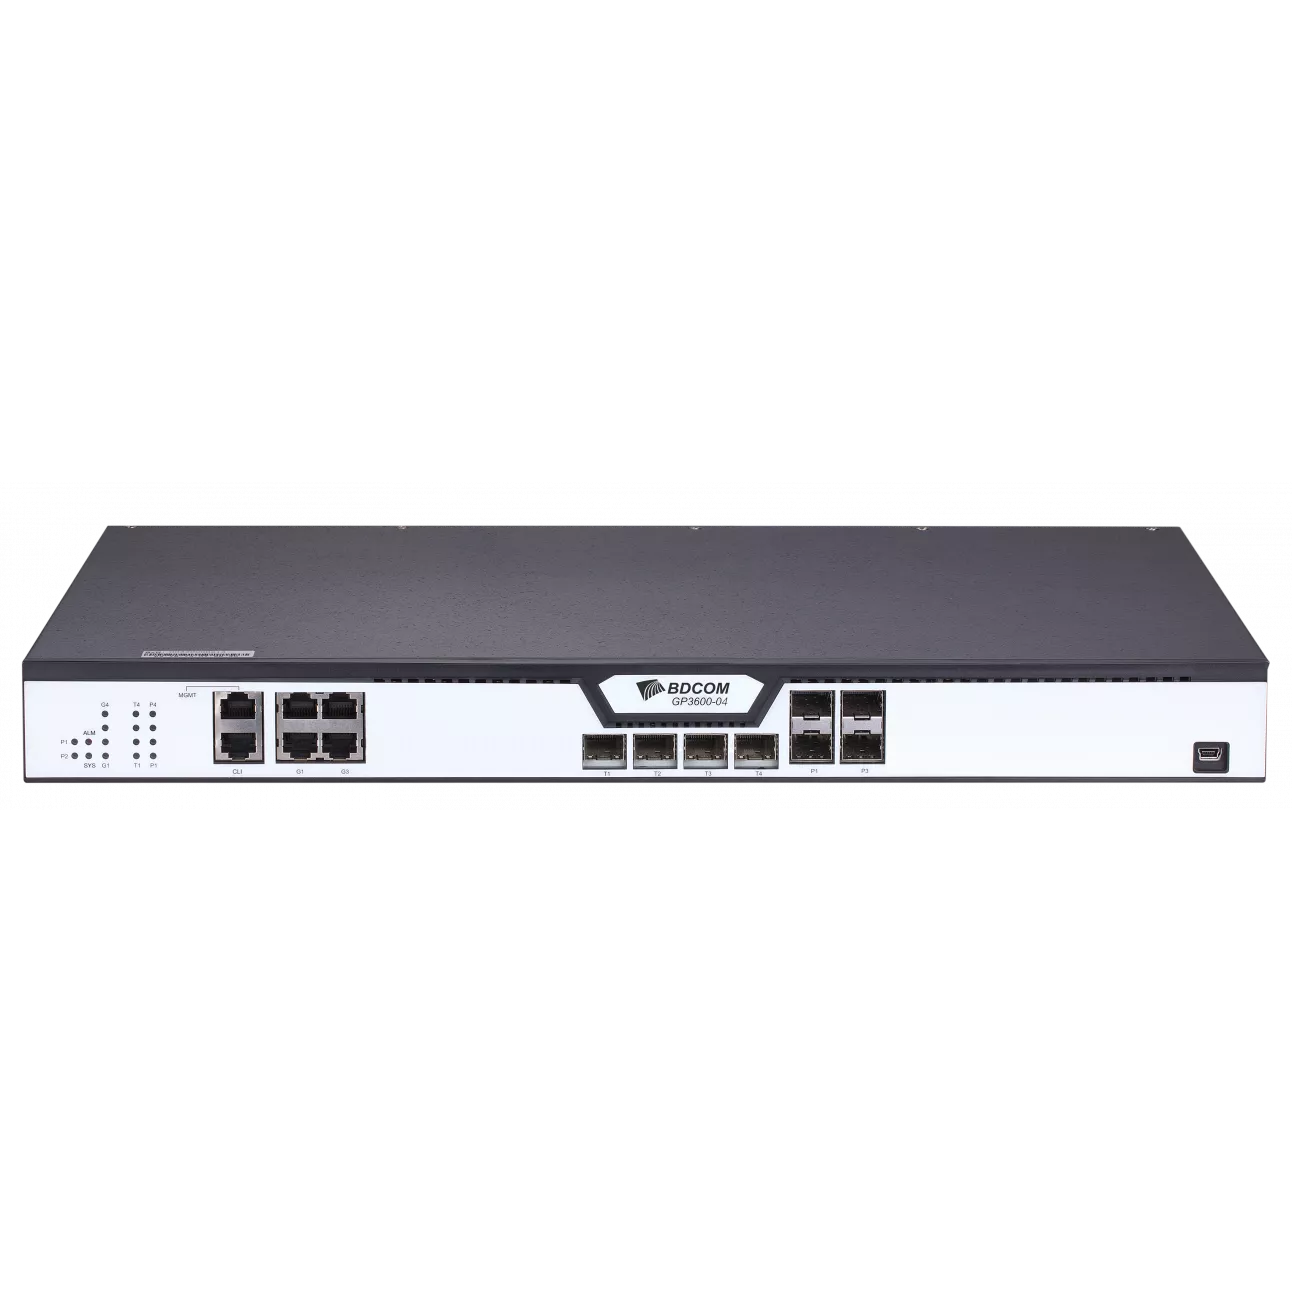 Абонентский терминал (OLT) BDCOM GP3600-04-2AC, WAN (GPON SFP) 4x1 Гбит/с, LAN 8x1 Гбит/с/10 Гбит/с